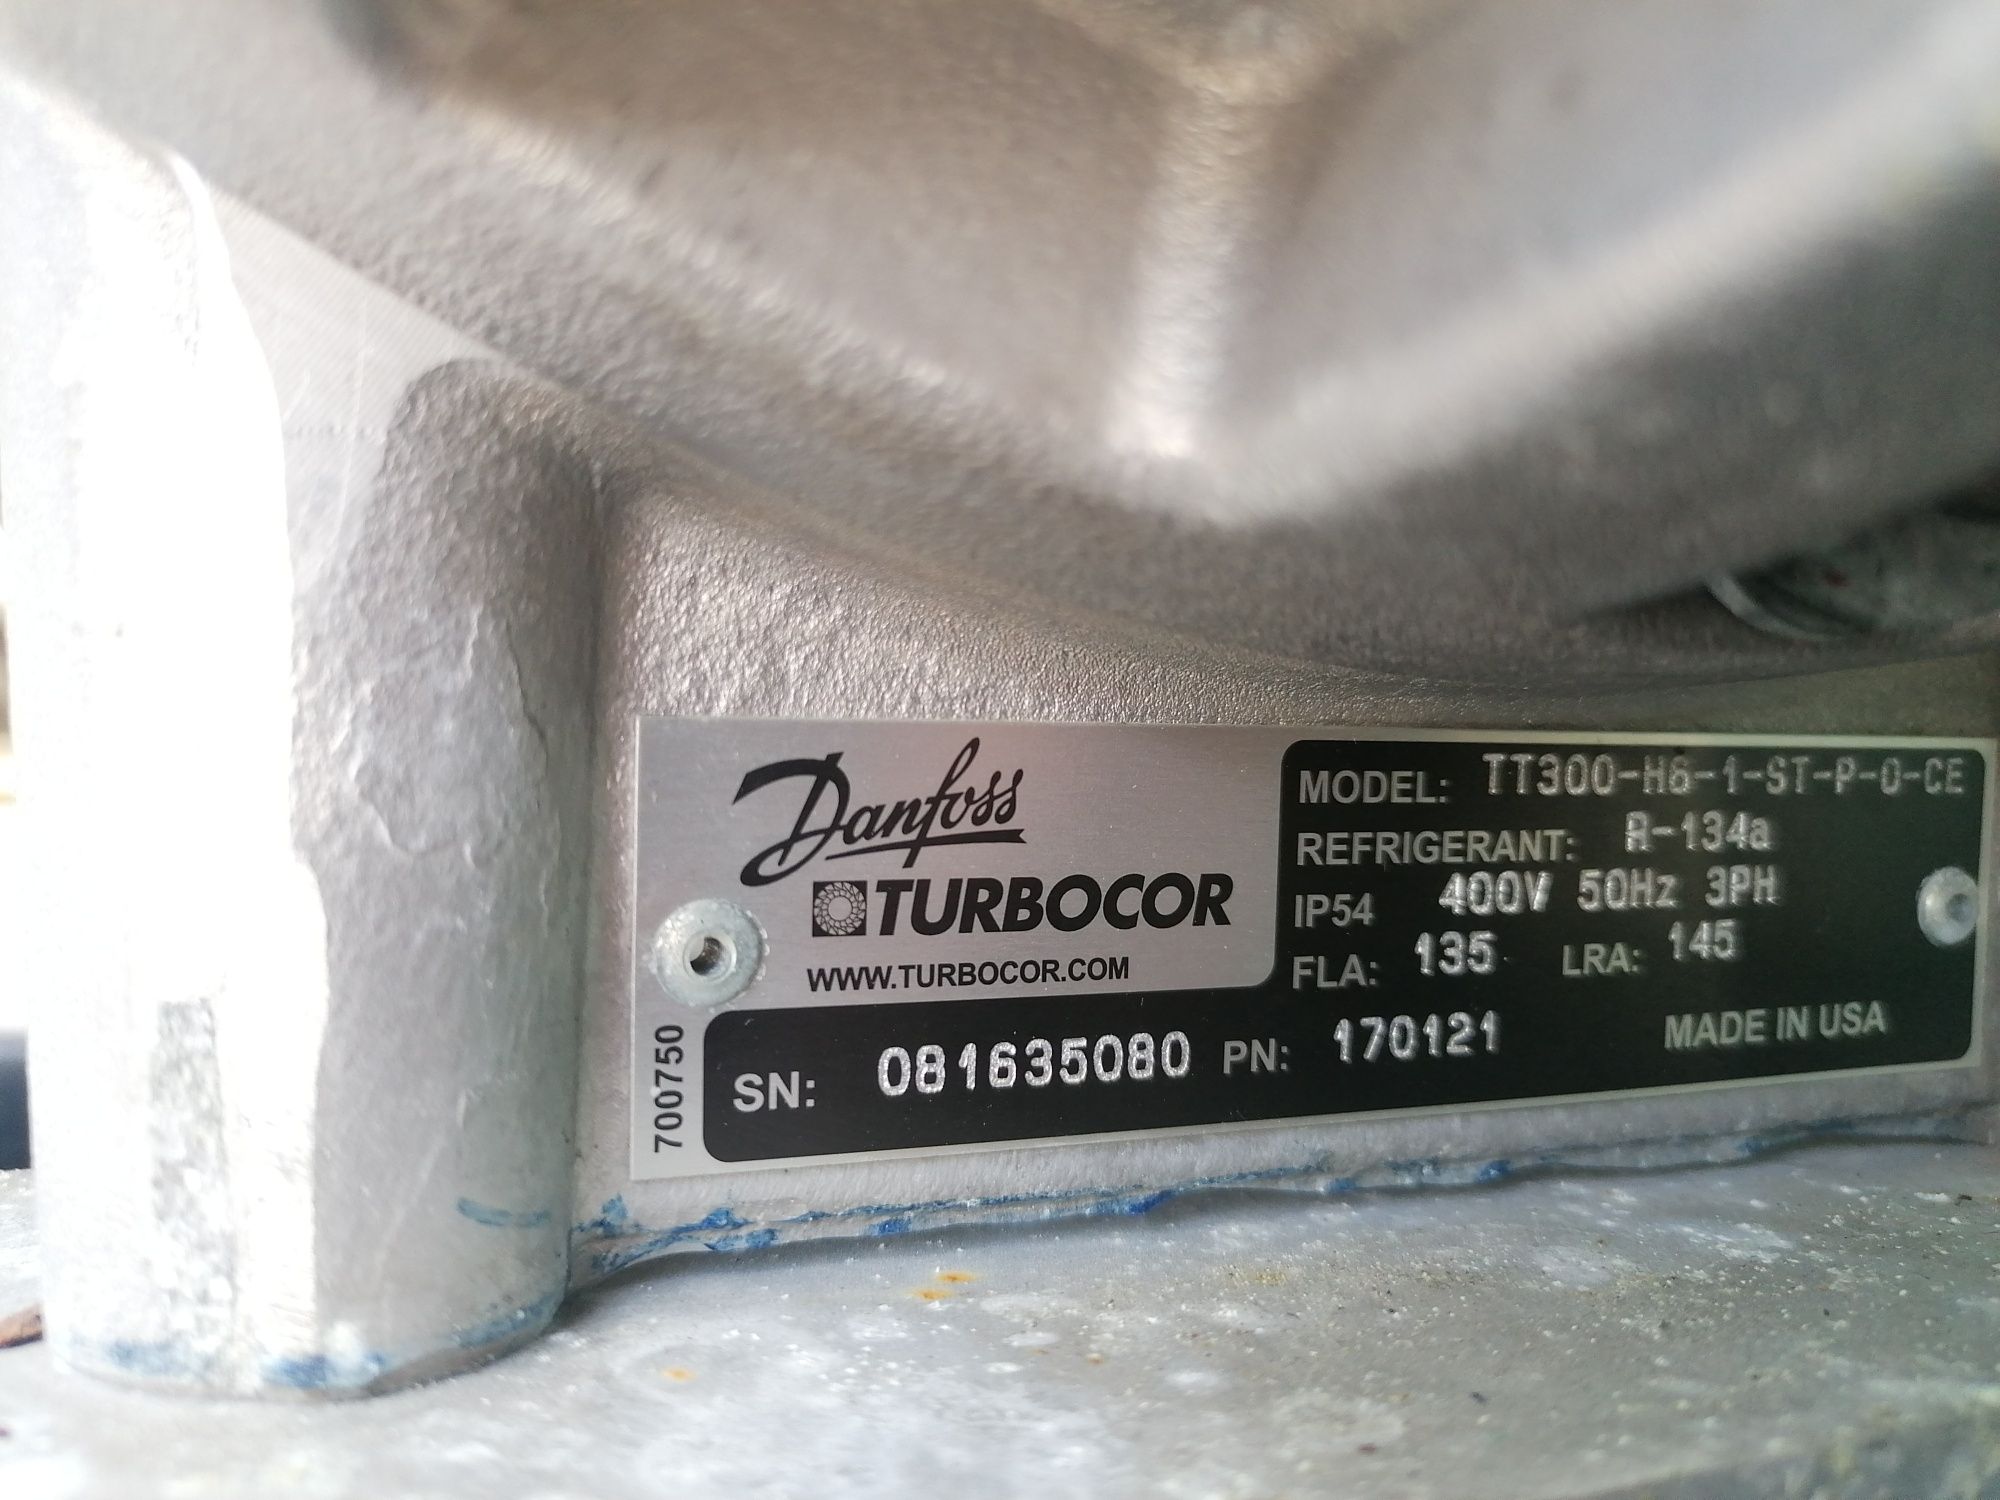 Danfoss turbocor bez olejowa sprężarka kompresor HFC134a klimatyzacja